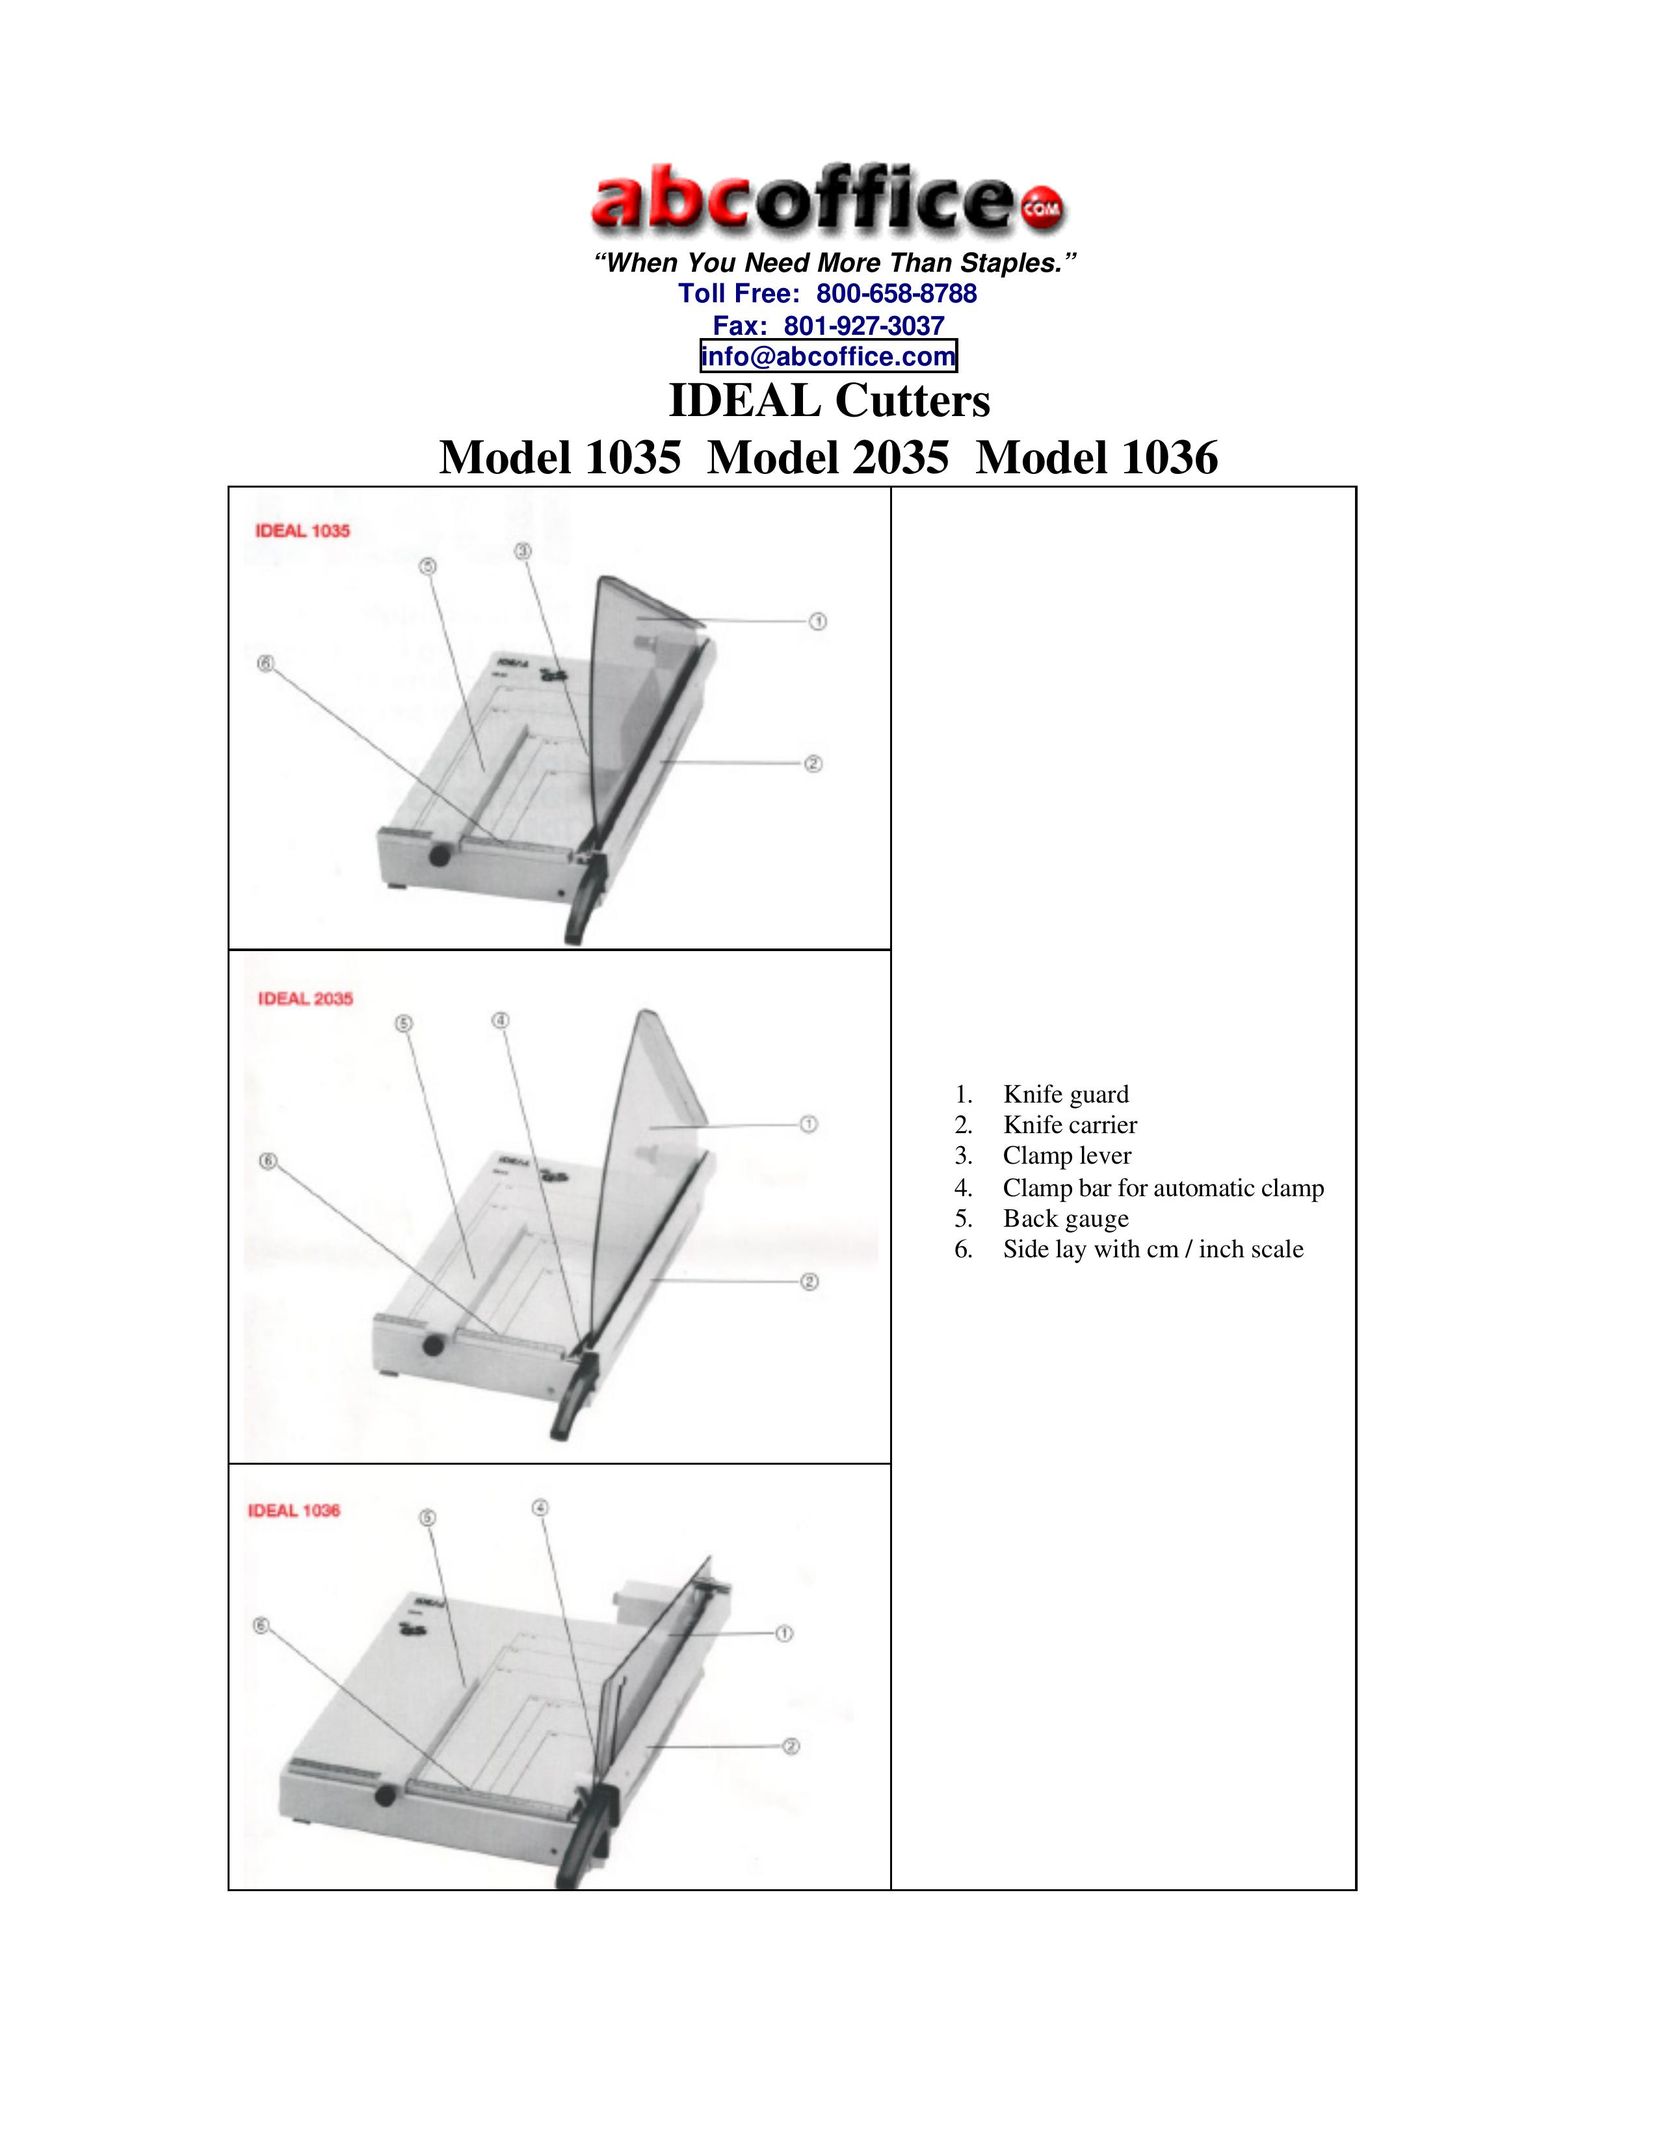 ABC Office 1036 Paper Shredder User Manual